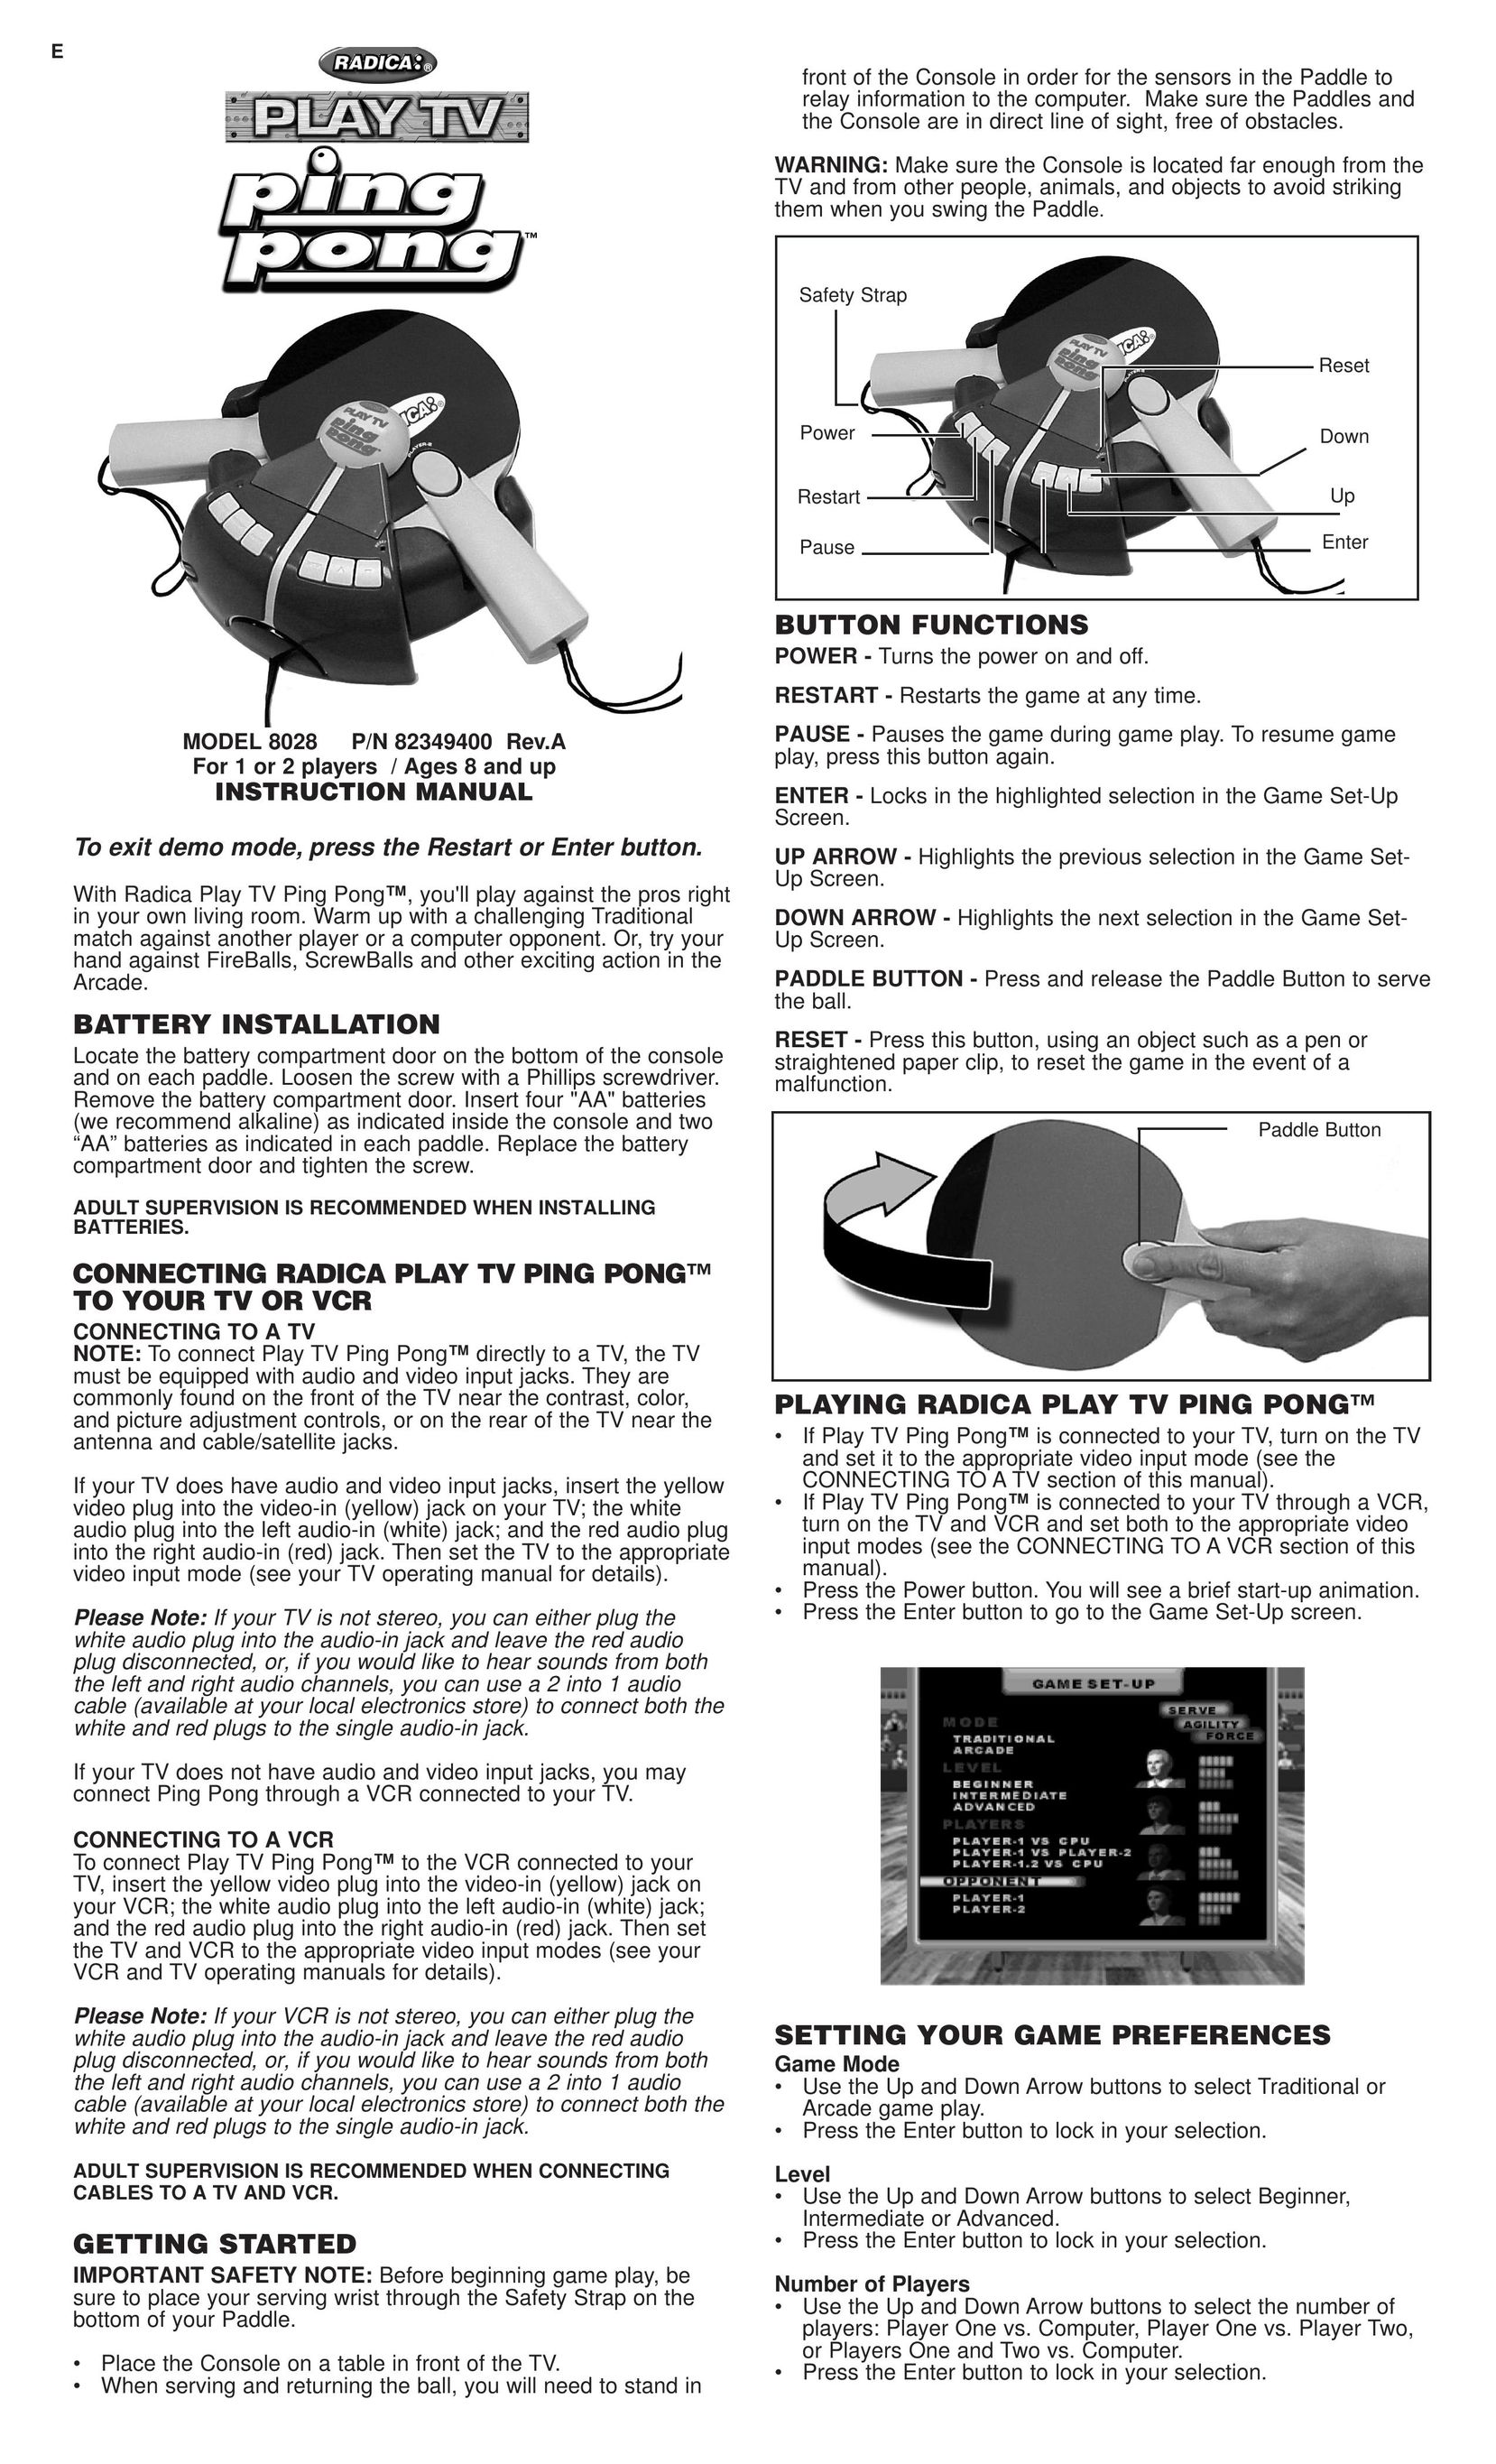 Radica Games 8028 Table Top Game User Manual